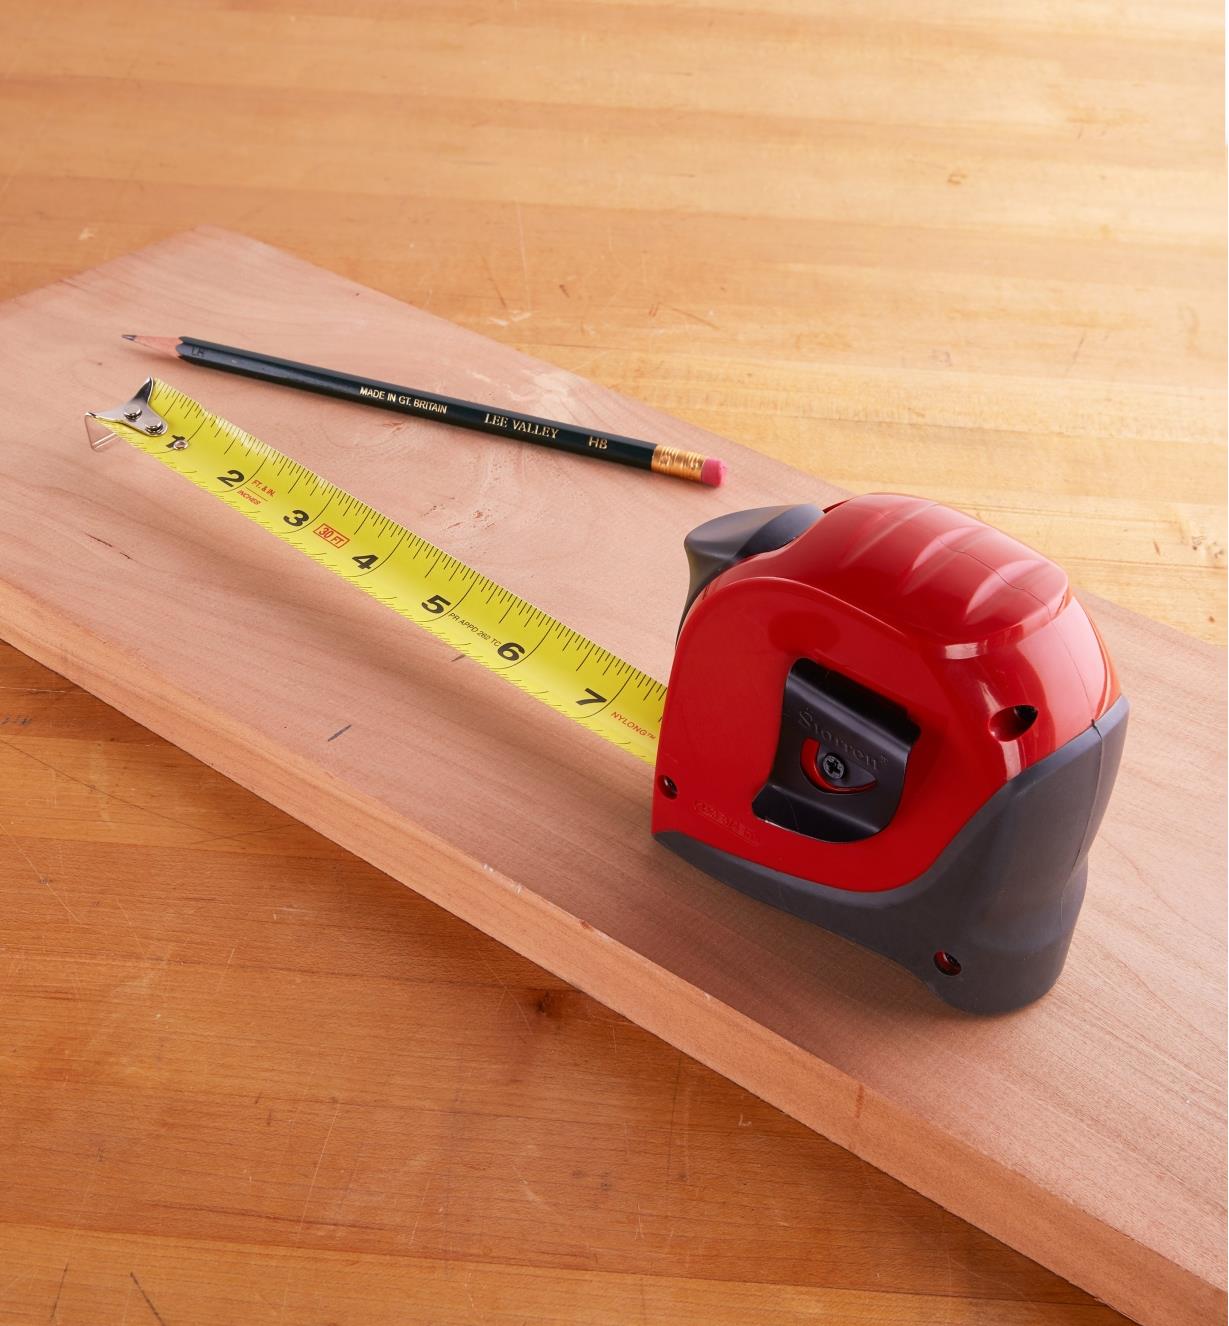 Starrett Exact tape measure on a wooden board